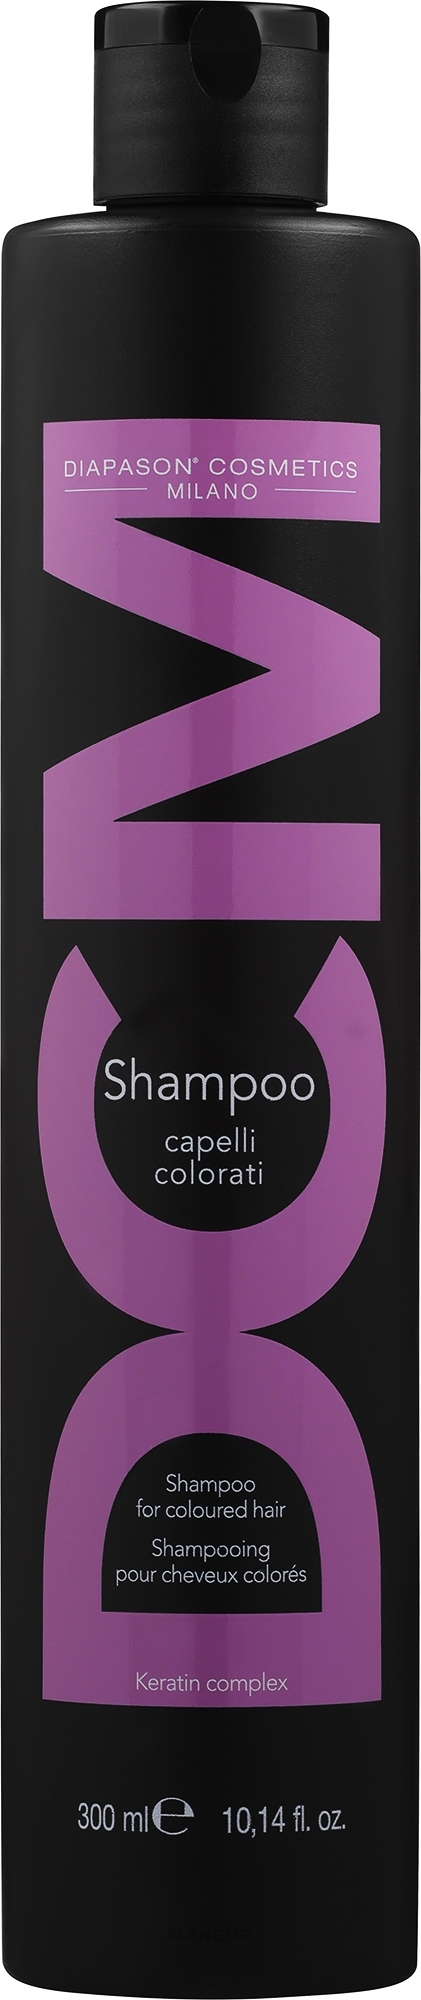 Шампунь для защиты цвета и восстановления окрашенных волос - DCM Keratin Complex Shampoo For Coloured Hair — фото 300ml